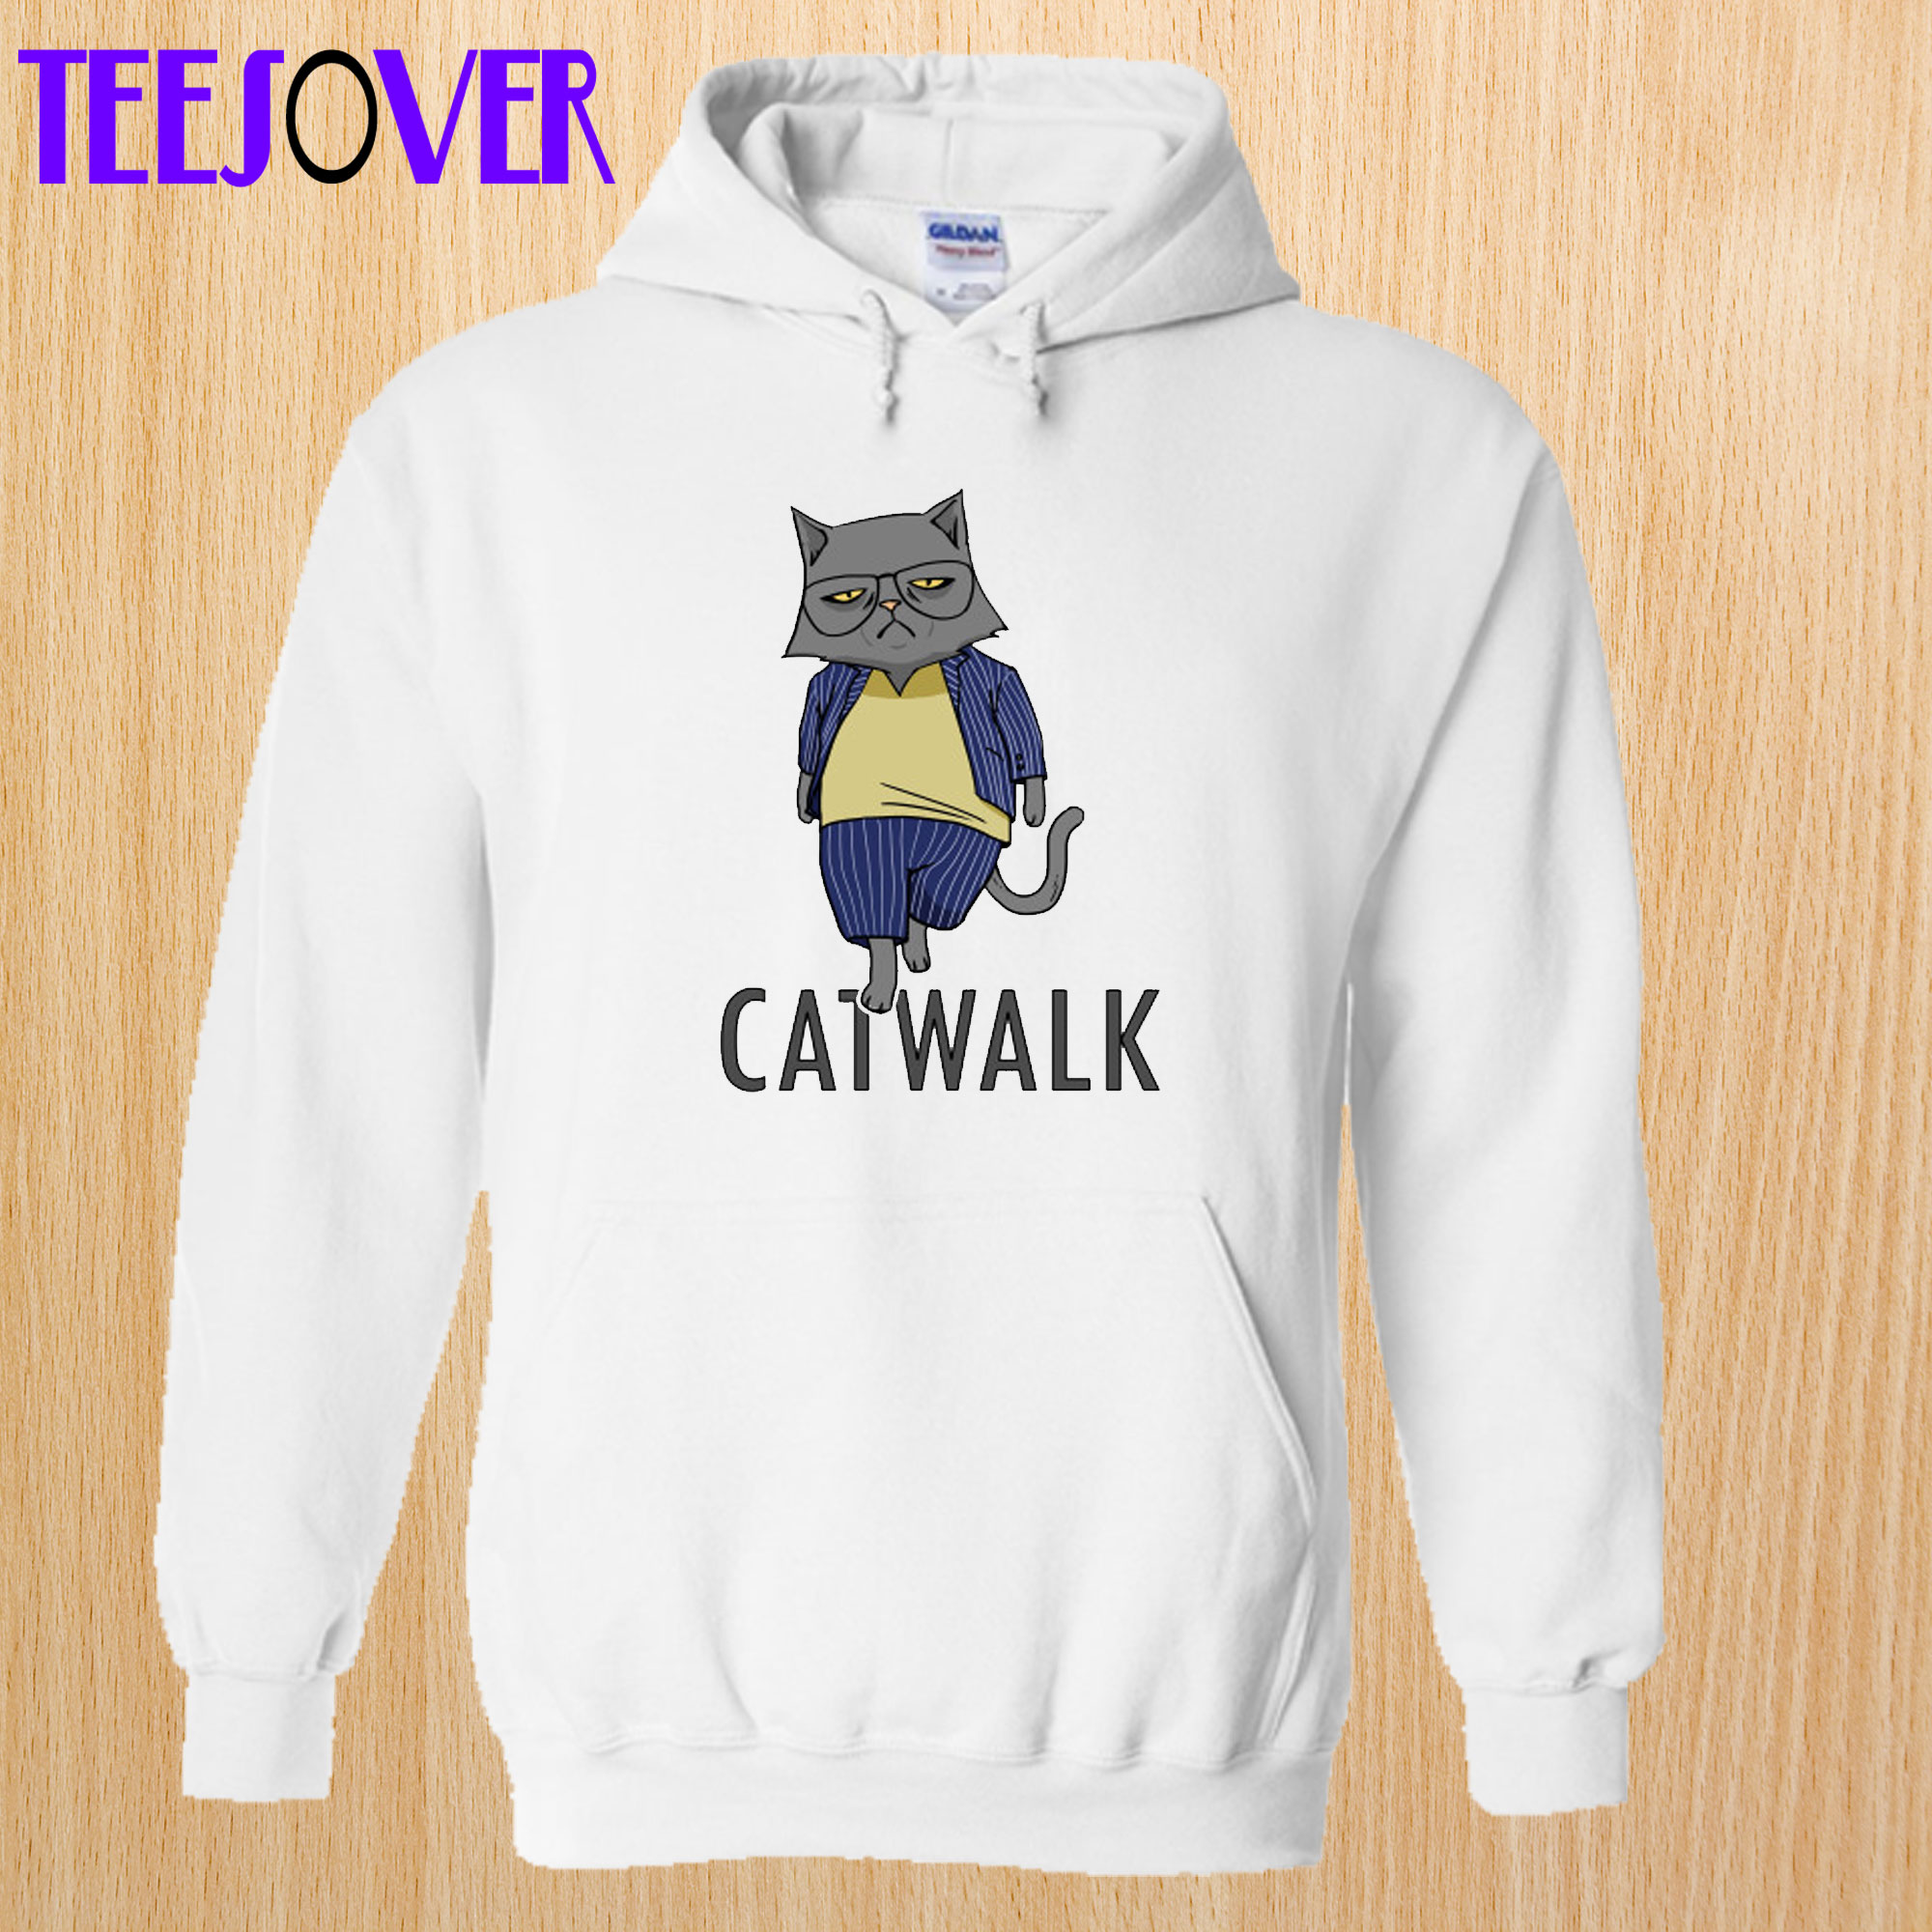 Catwalk Hoodie